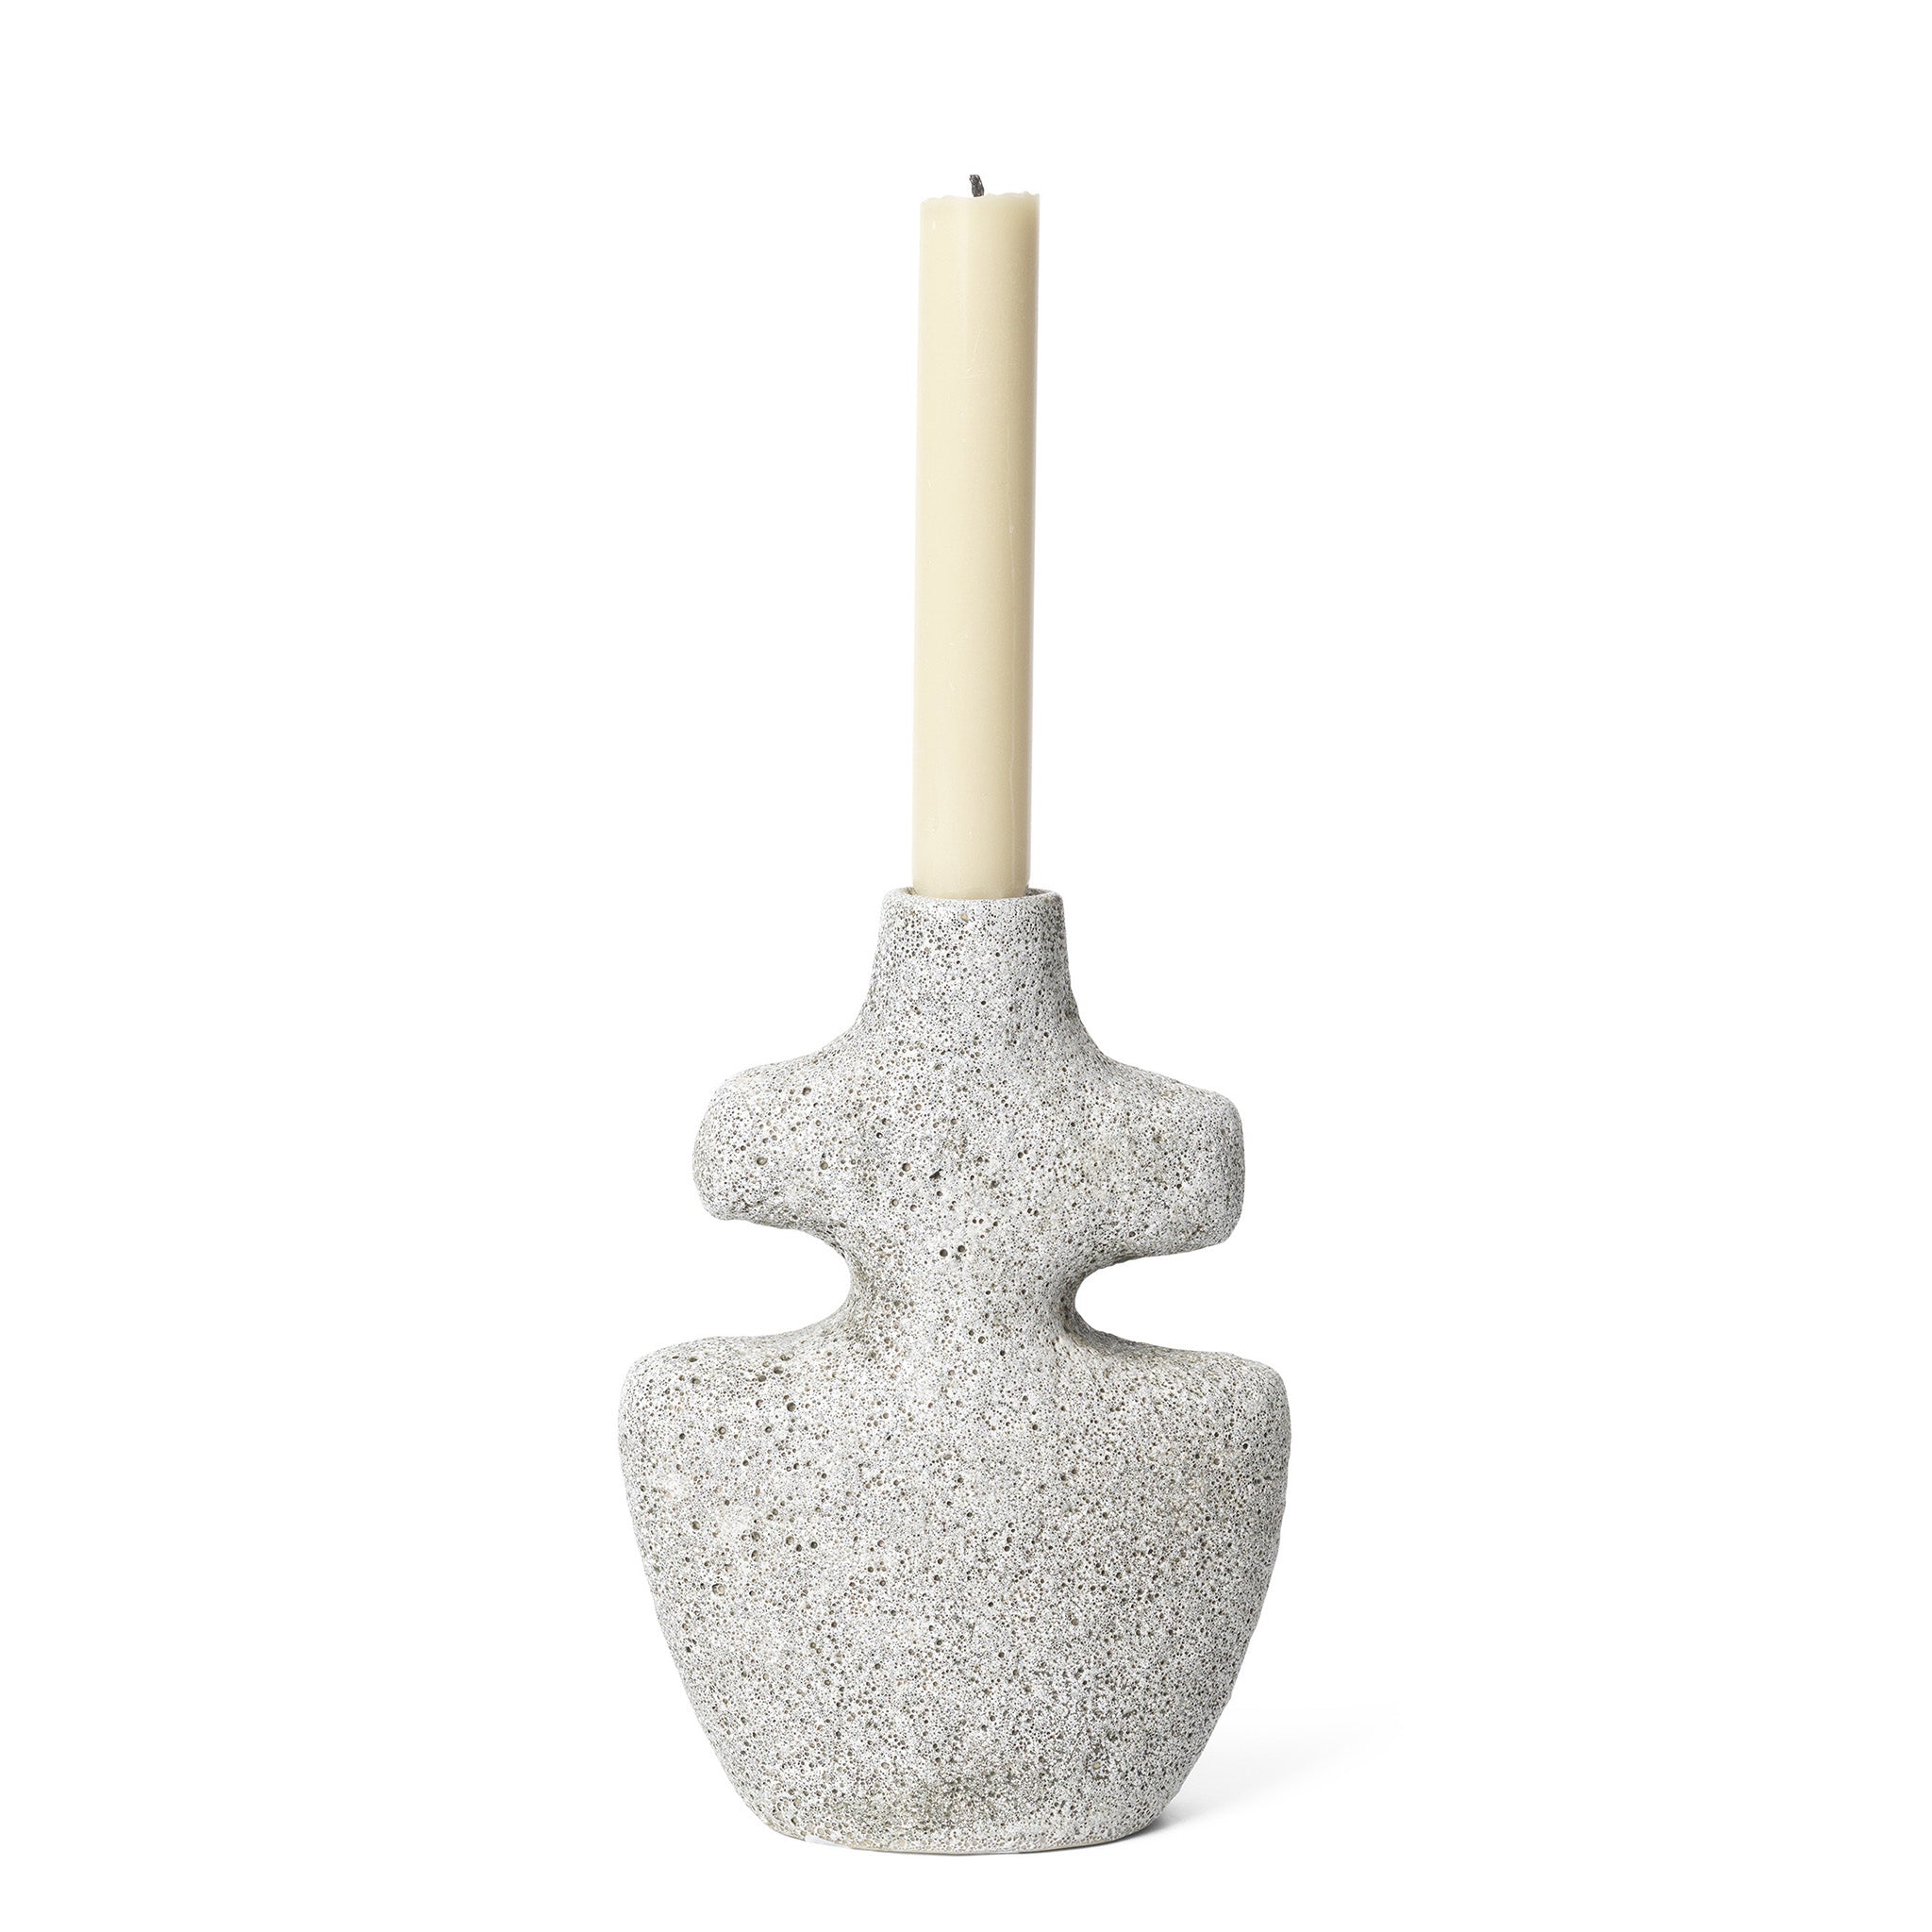 Yara Candle Holder Medium / Grey Pumice by Ferm Living